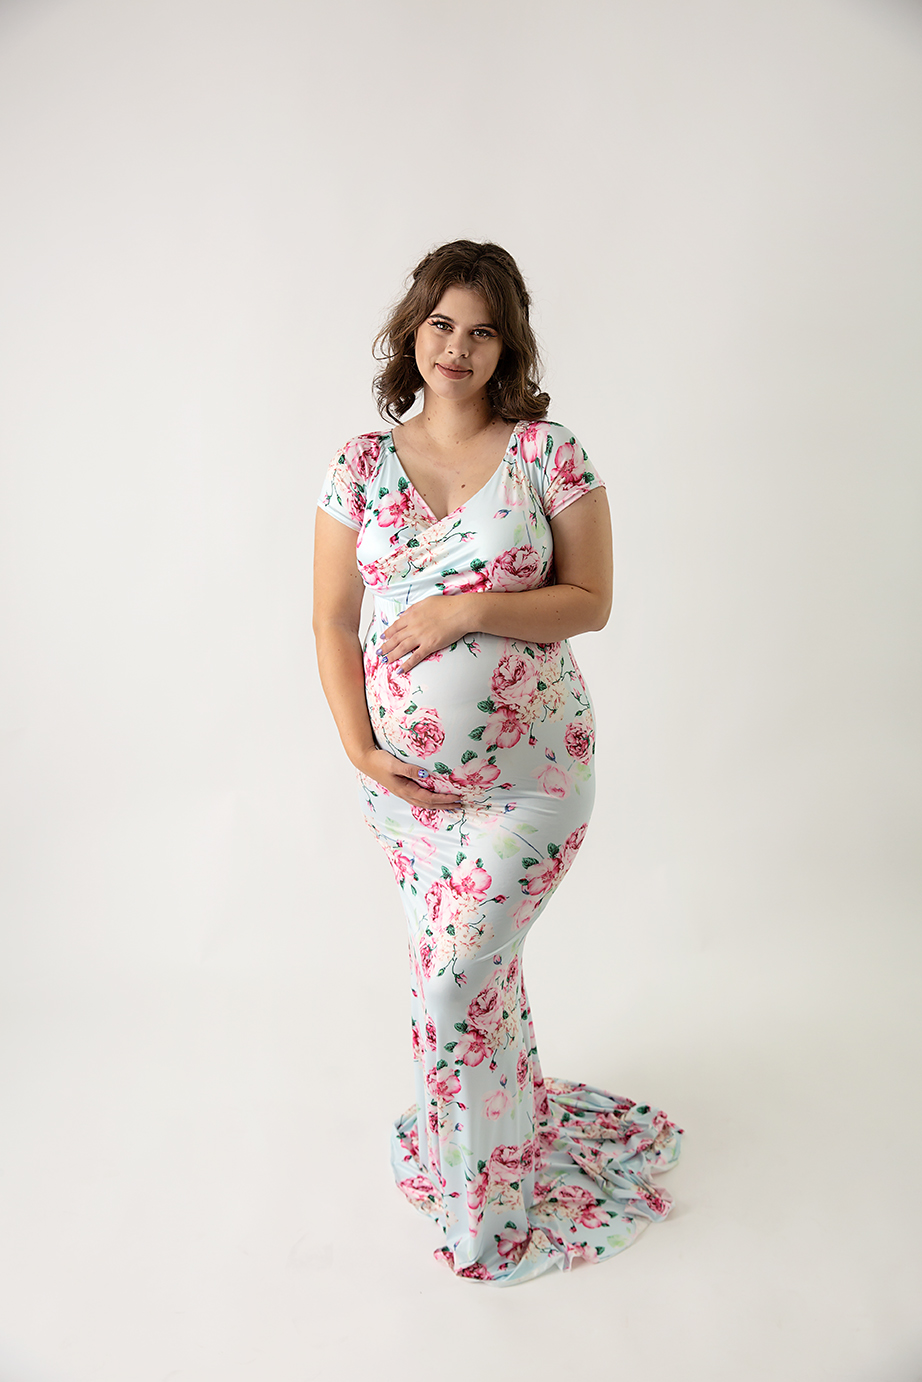 Maternity client wardrobe